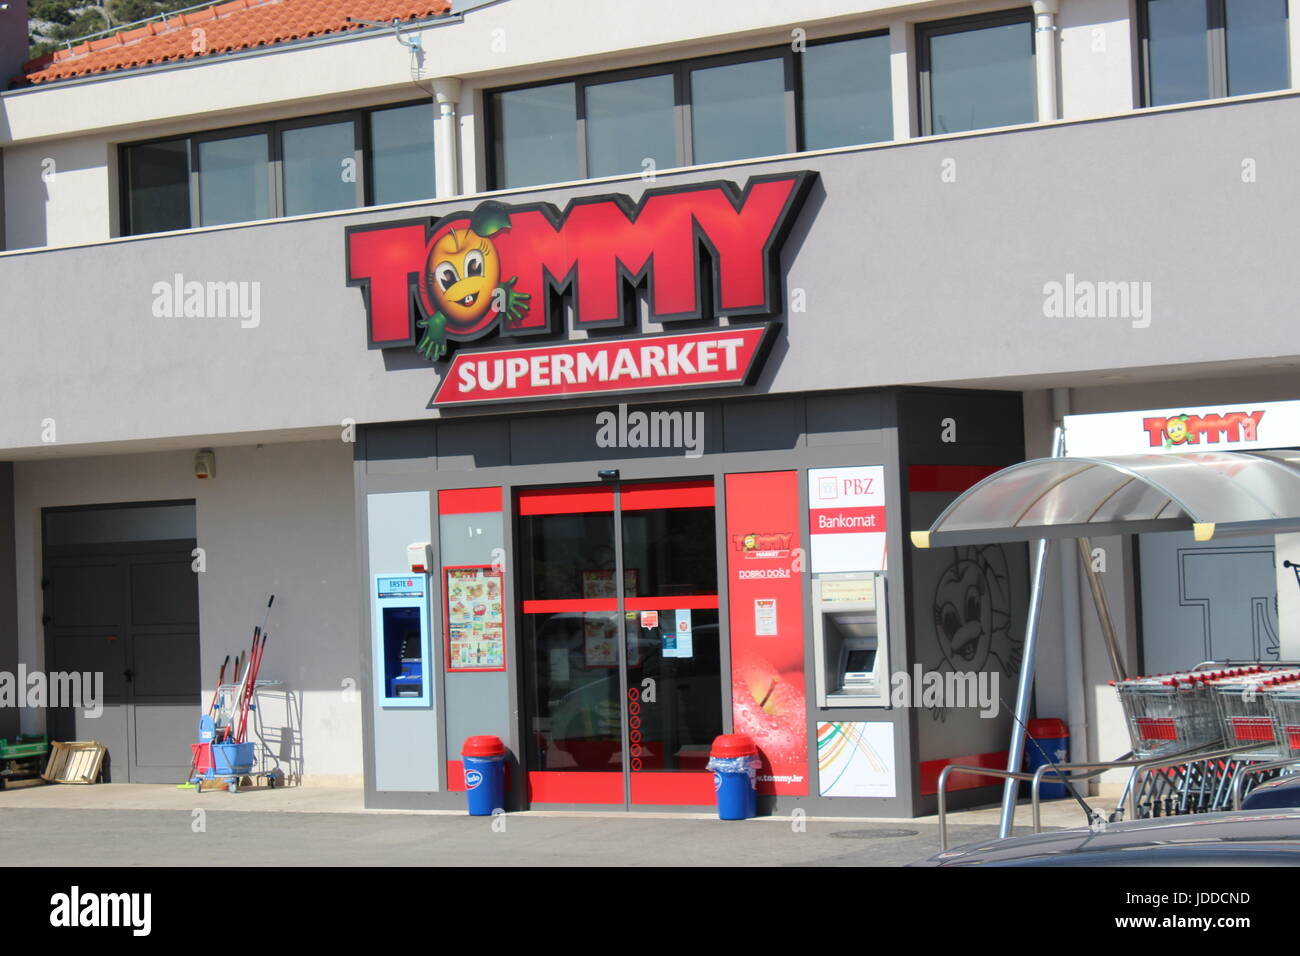 Exterior or Tommy supermarket in Agana marina Croatia Stock Photo ...